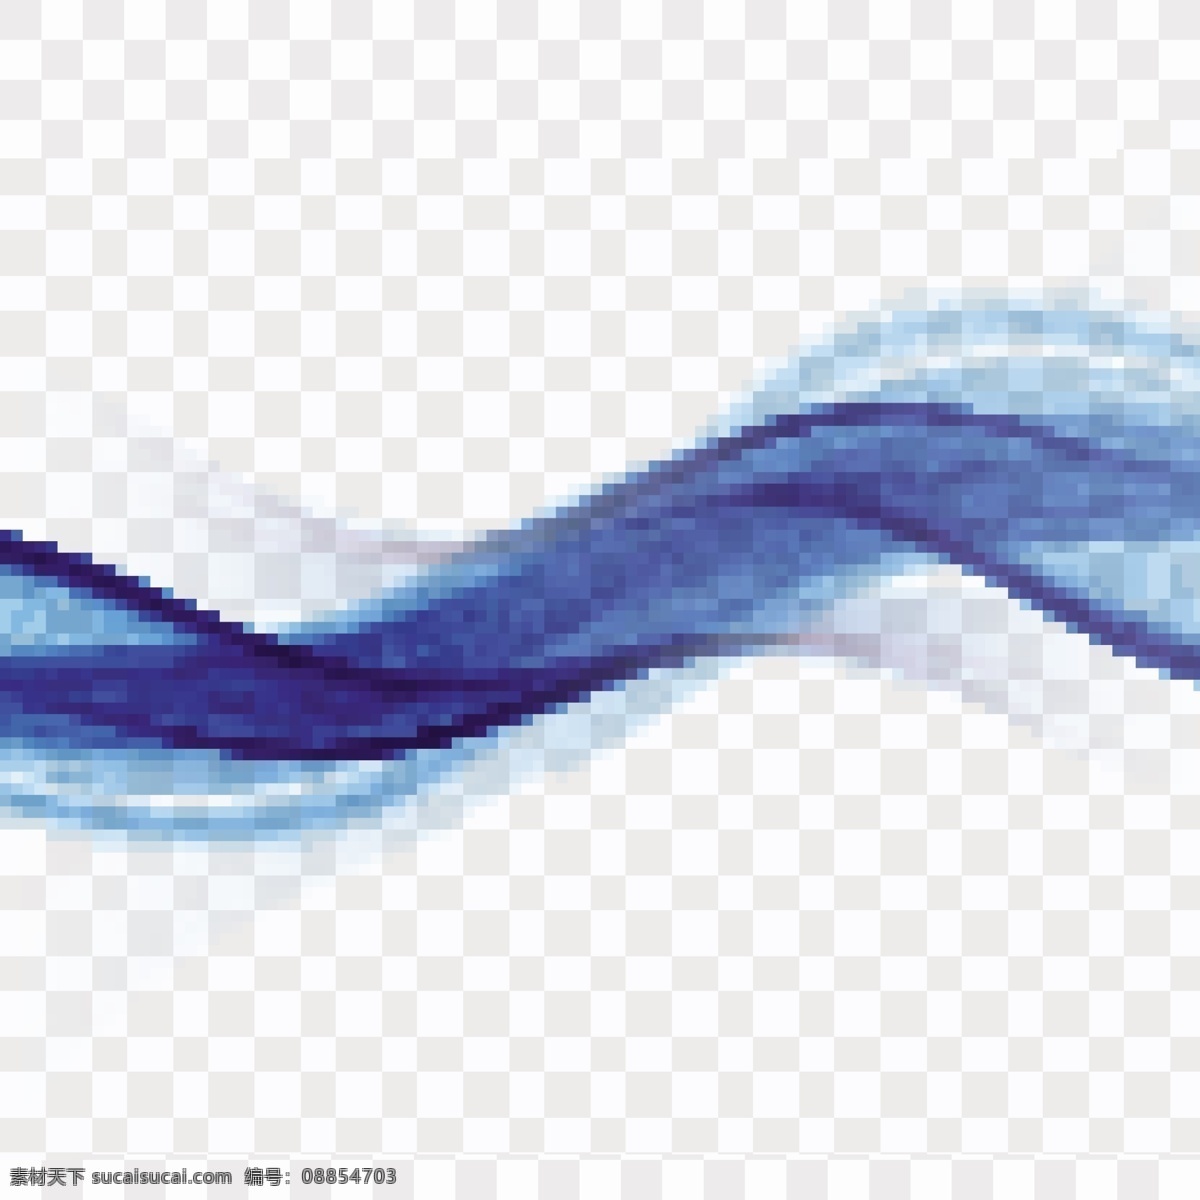 浮动的形状 背景 抽象 模板 线条 波浪 蓝色 形状 烟雾 现代 抽象的形状 运动 柔软 闪亮 漂浮 平滑 混合 波浪背景 流动